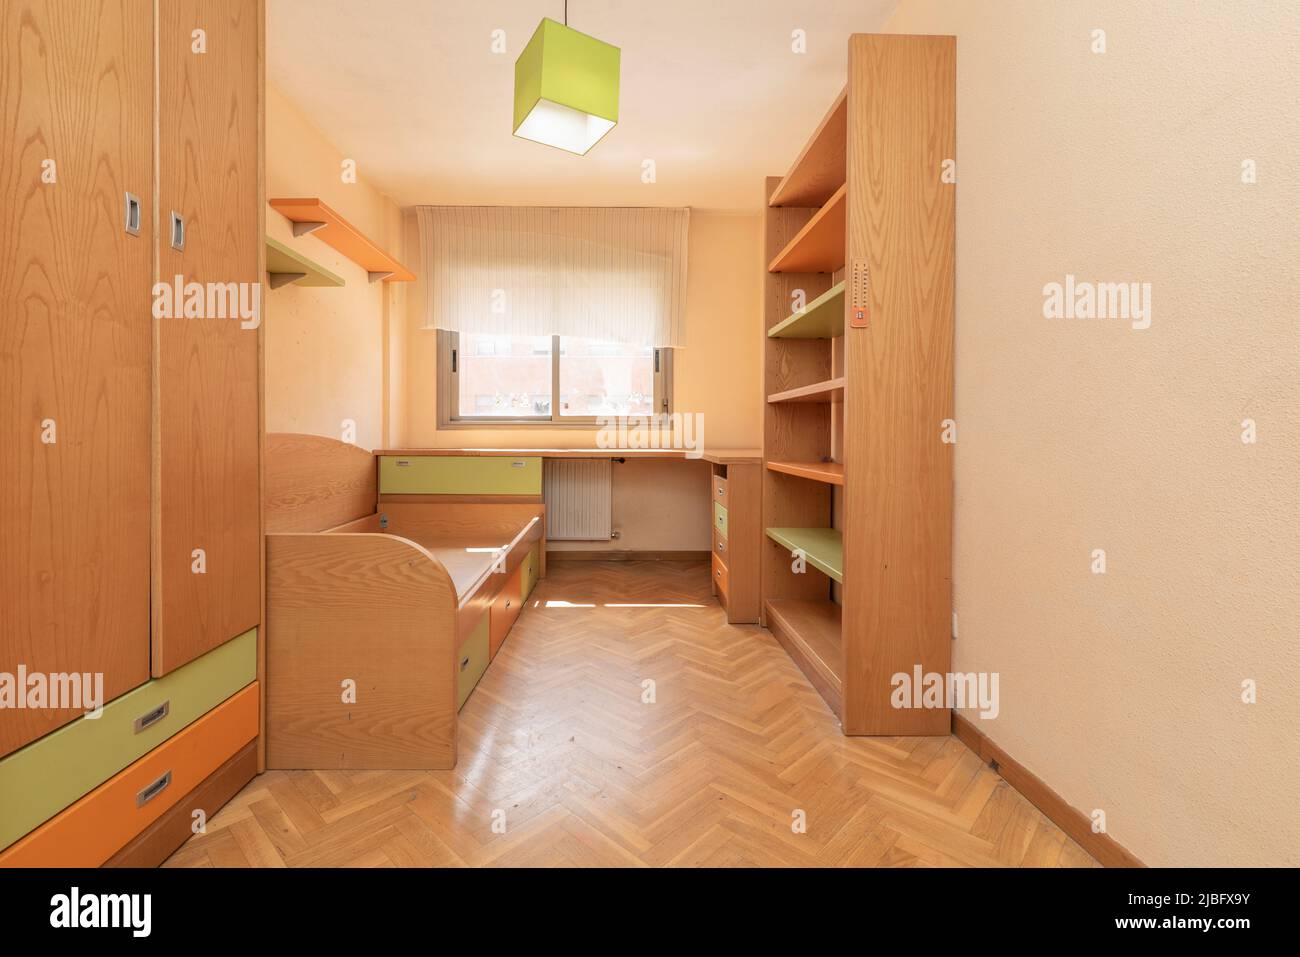 Chambre jeune avec mobilier en pin, étagères assorties, bureau et armoire Banque D'Images